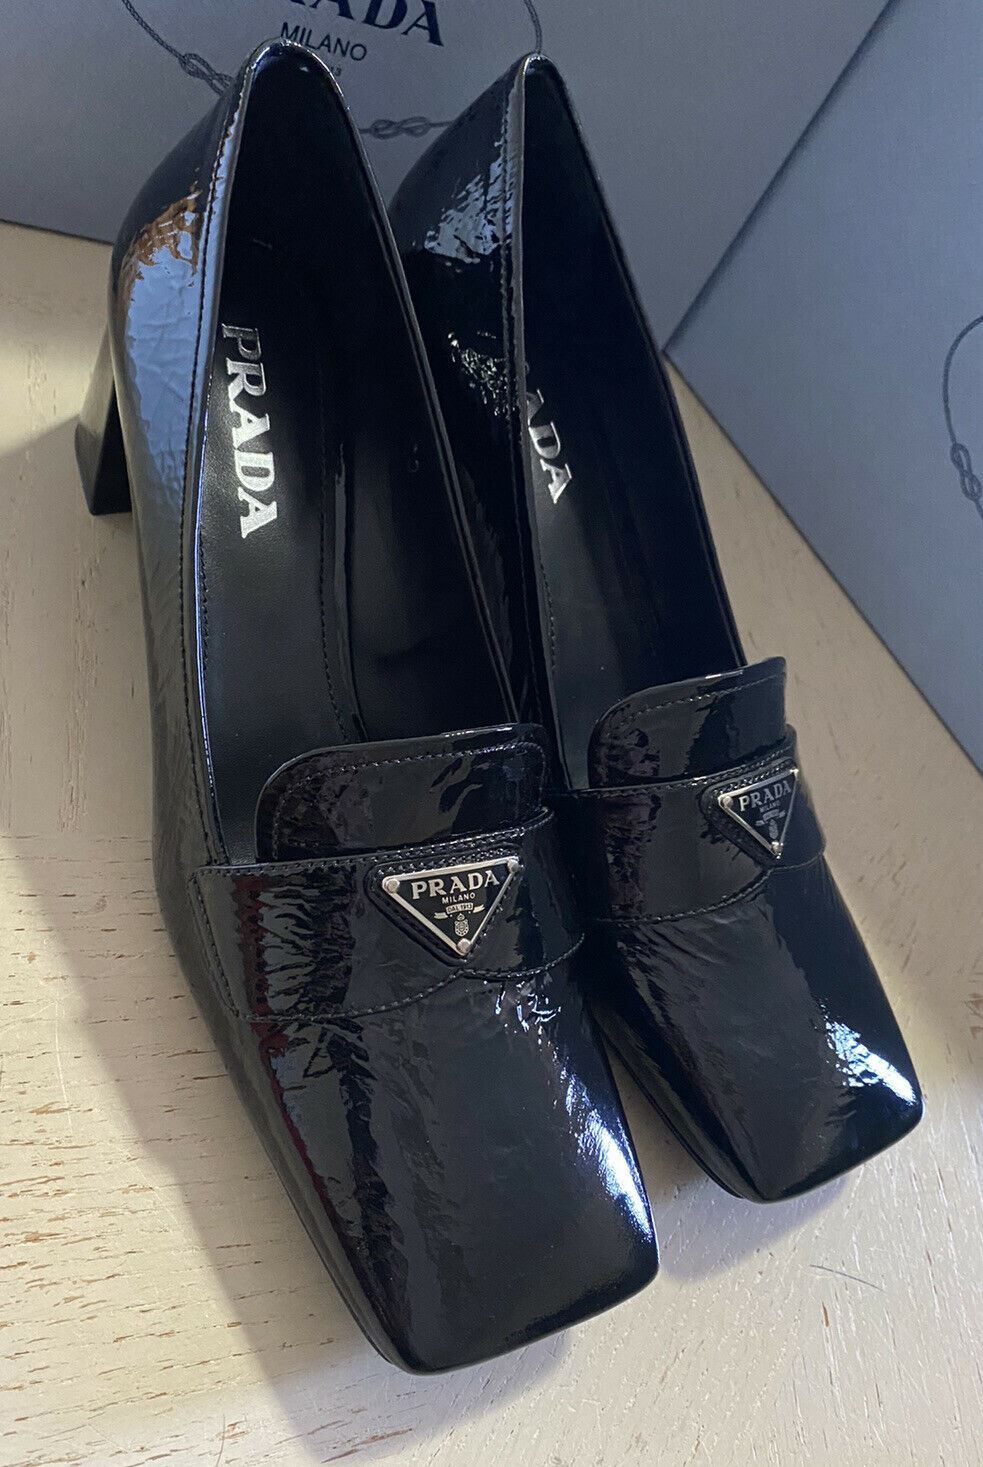 NIB $750 PRADA Женские туфли-лодочки Мокасины из фактурной кожи, черные 10,5 США/40,5 ЕС